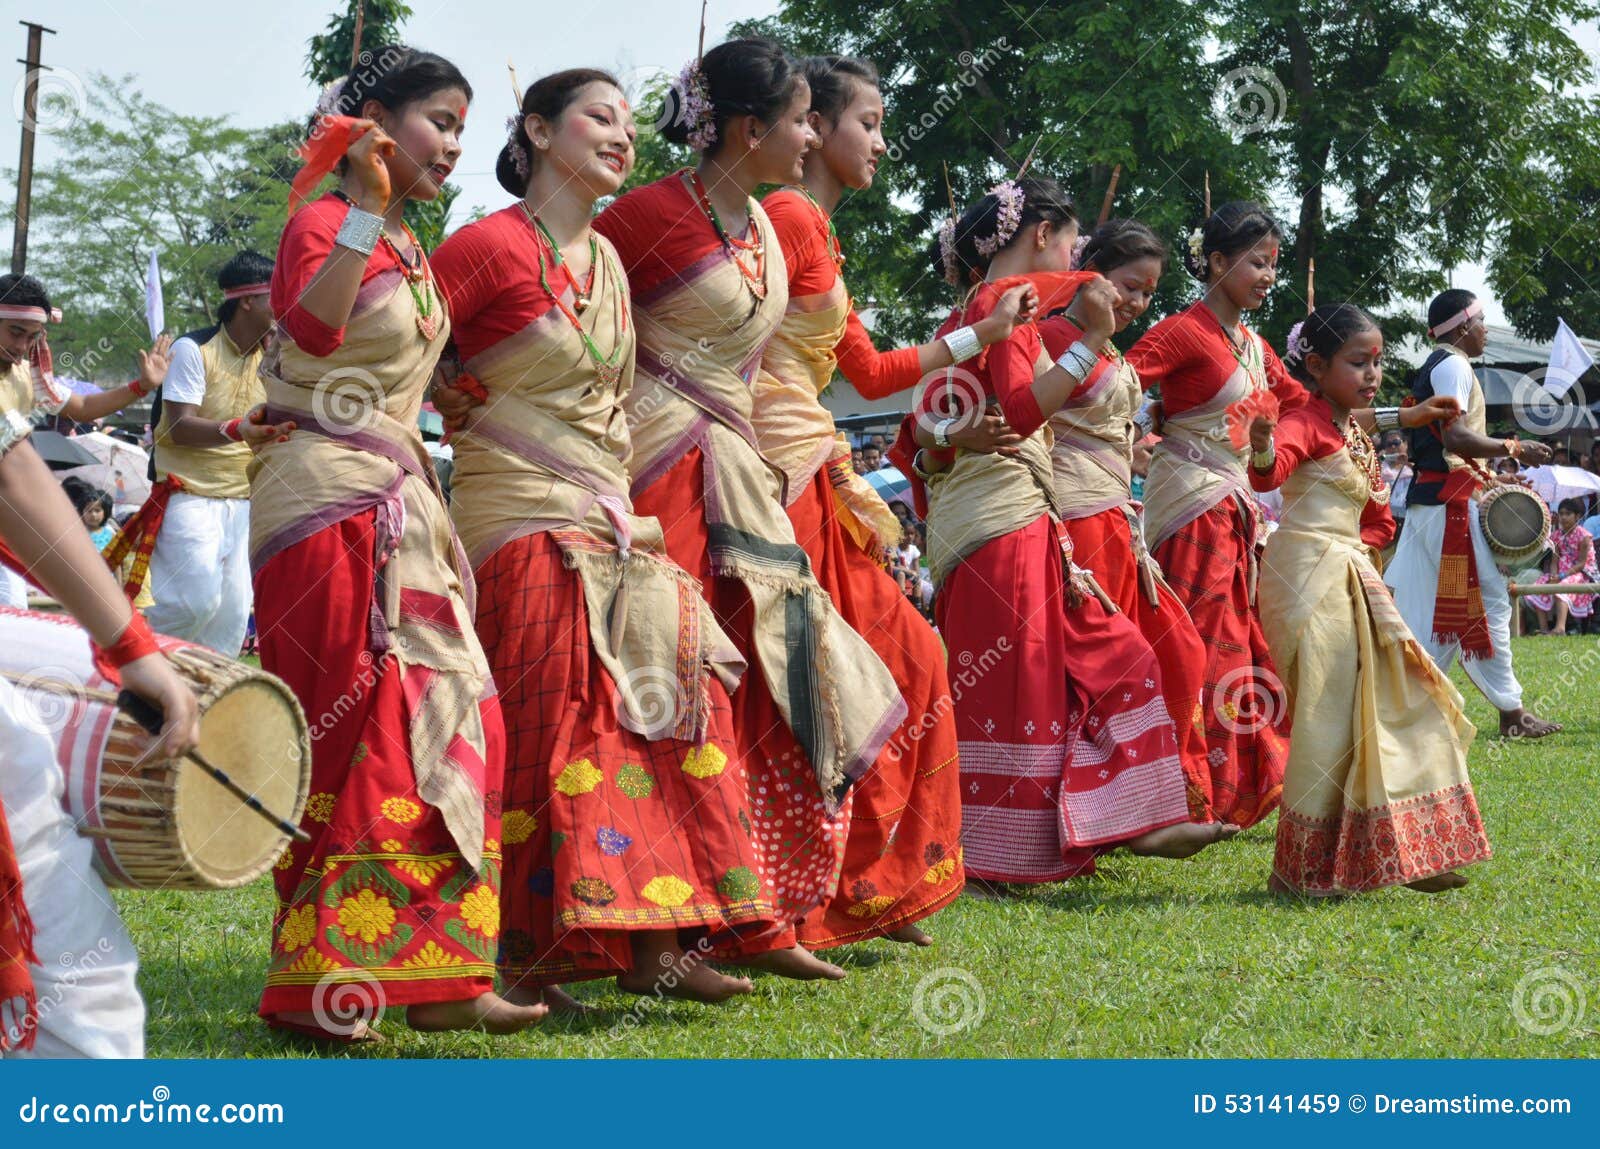 Top 5 Most Popular Folk Dances of Assam